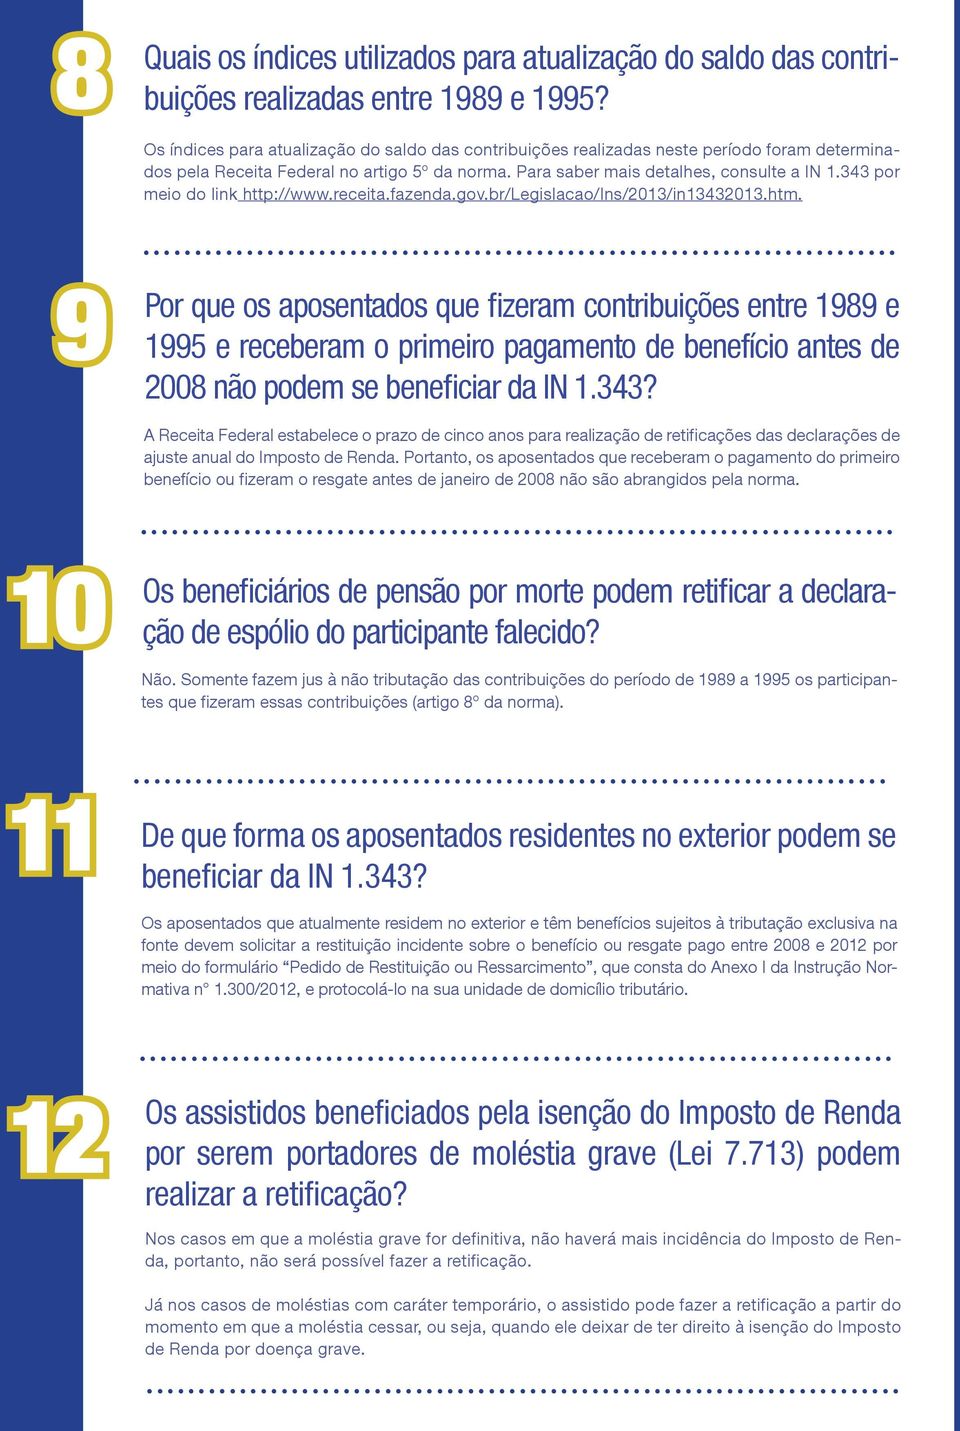 343 por meio do link http://www.receita.fazenda.gov.br/legislacao/ins/2013/in13432013.htm.